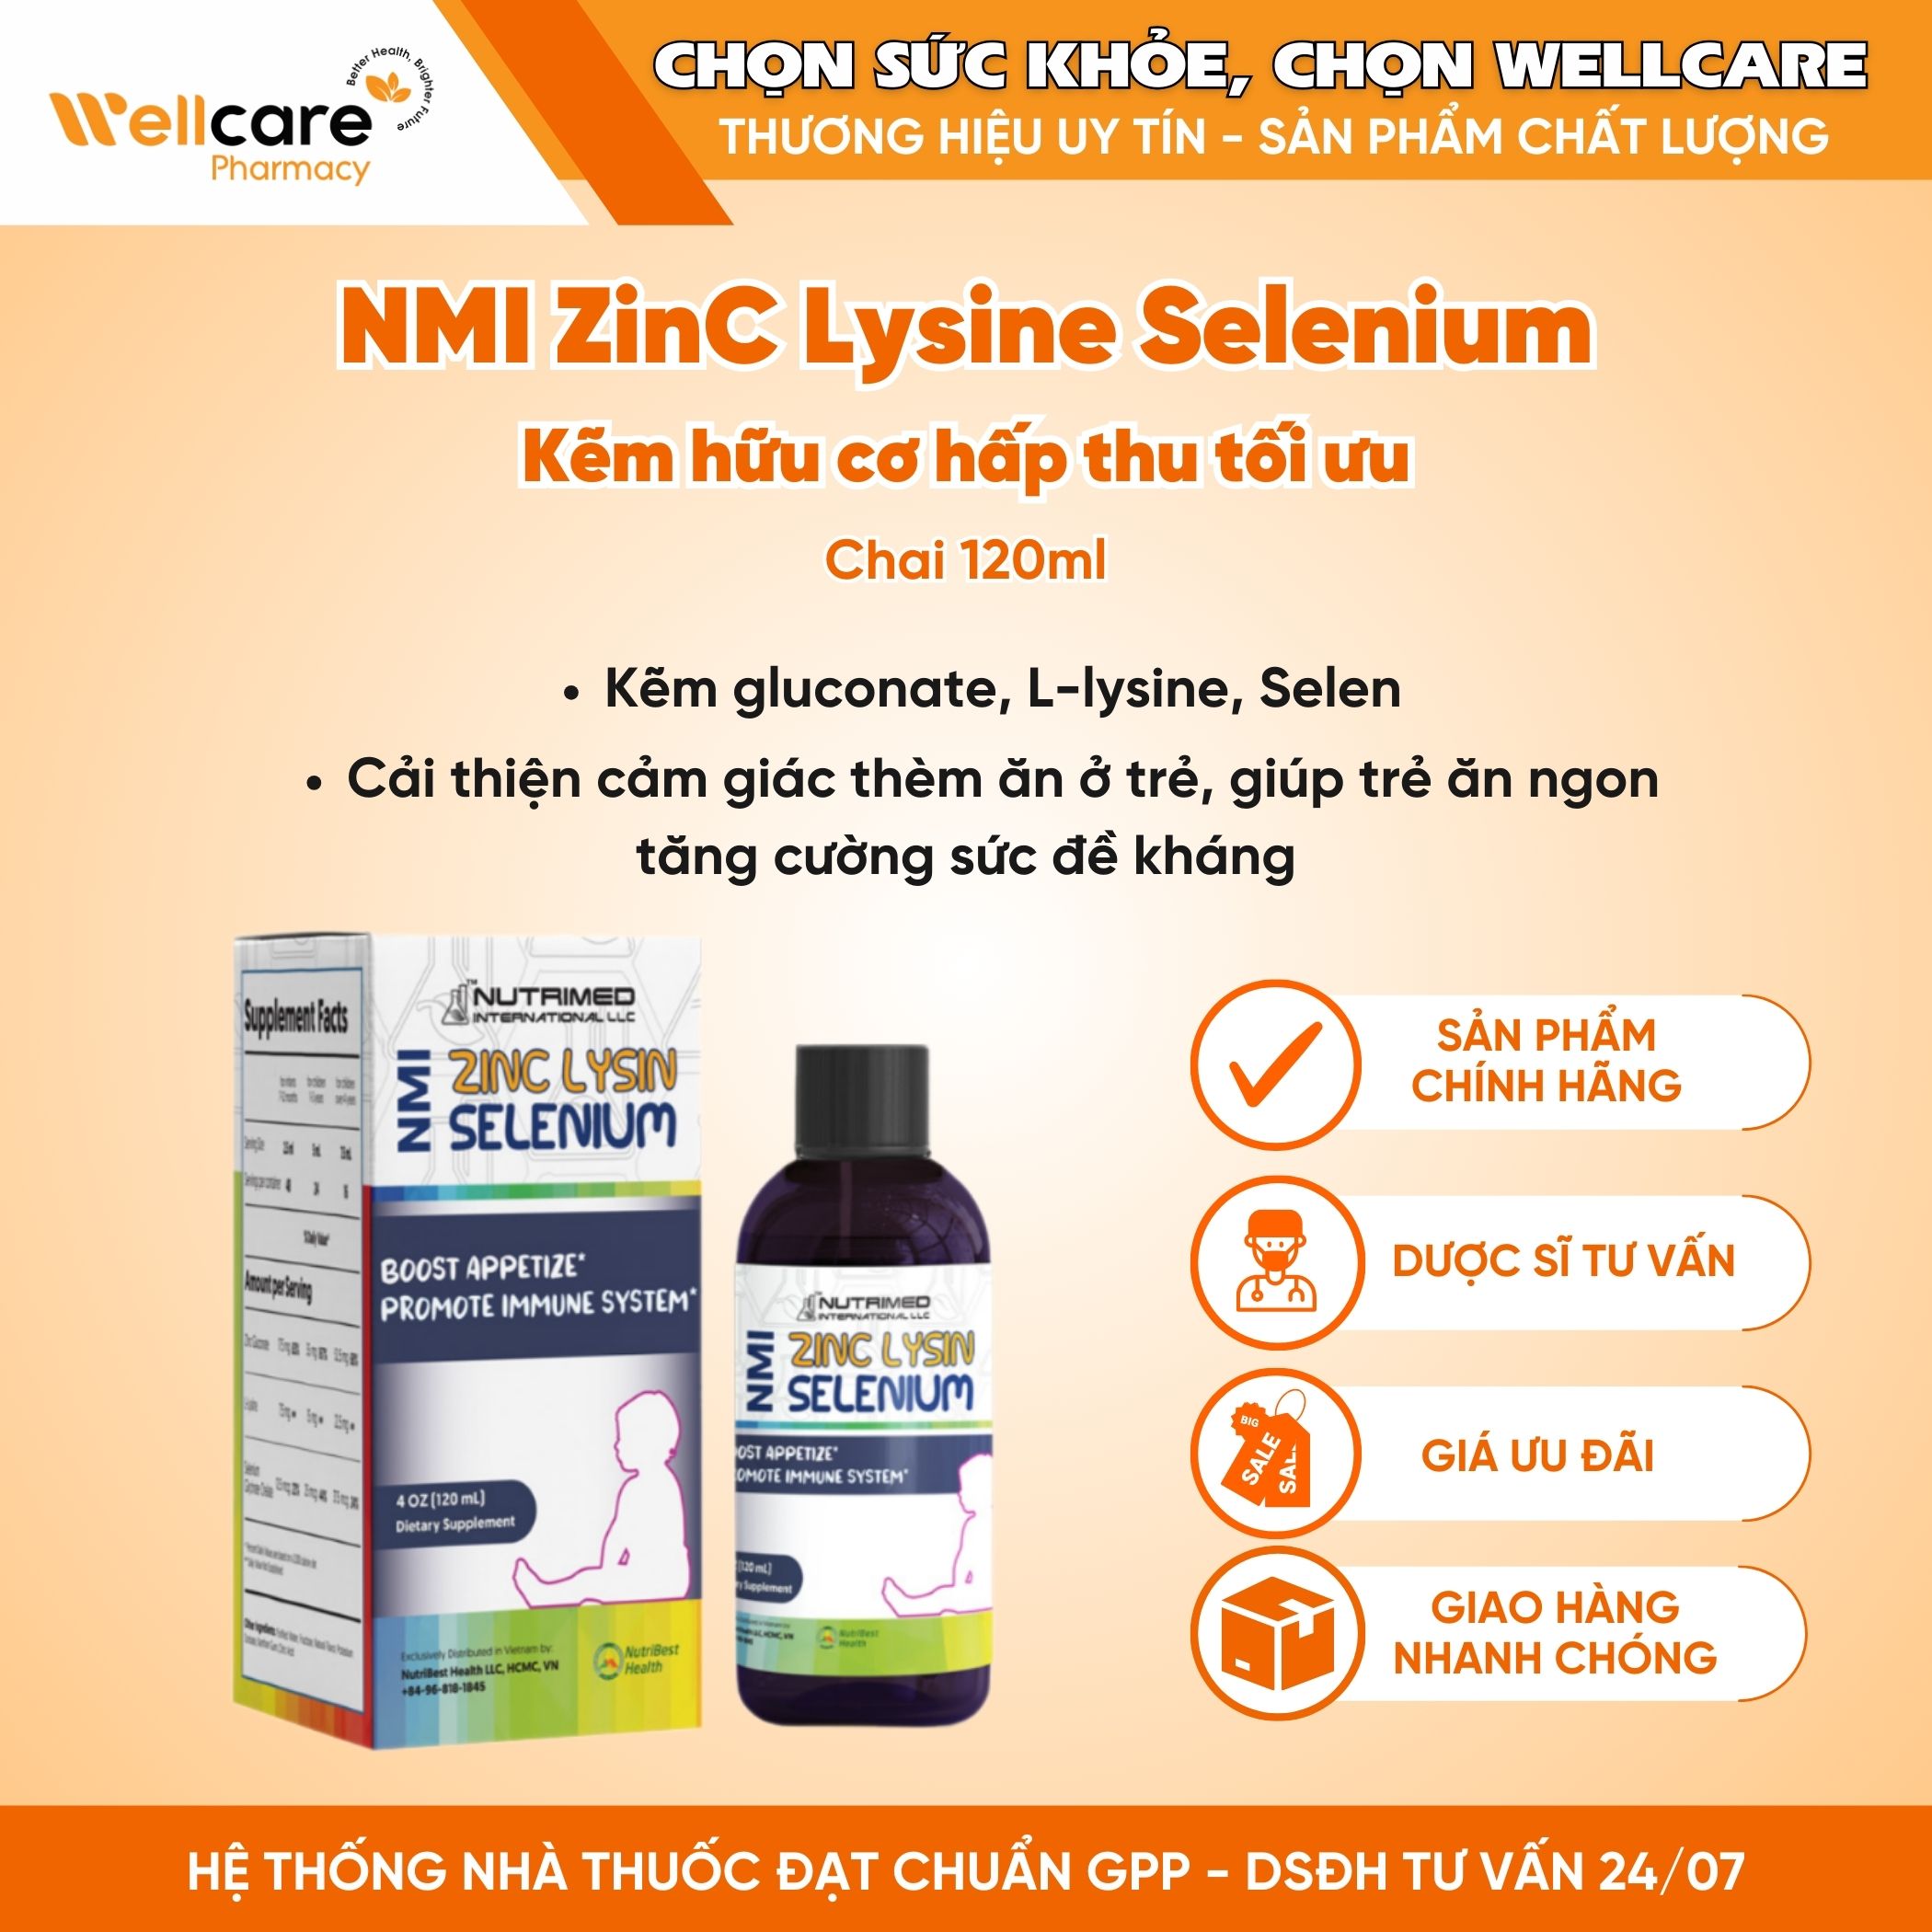 NMI ZINC LYSIN & SELENIUM – Syrup uống hỗ trợ tăng cường, giúp trẻ ăn ngon (Chai 120ml)